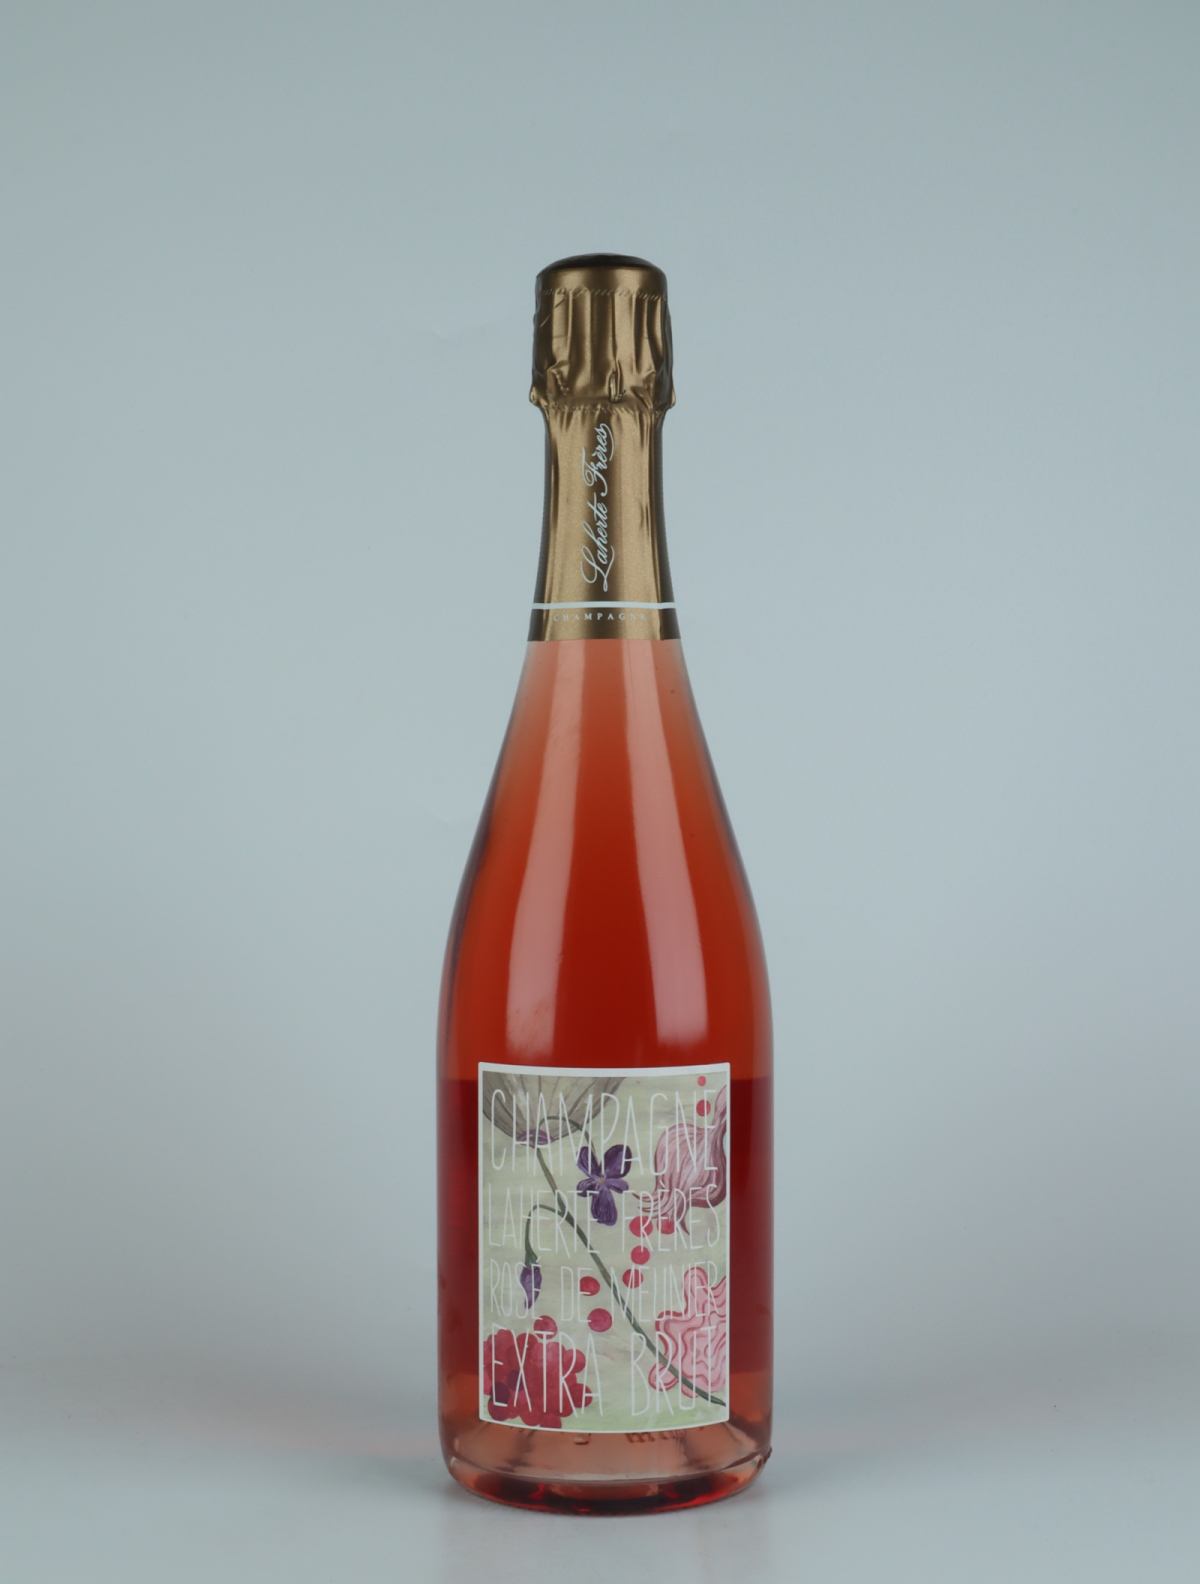 A bottle N.V. Rosé de Meunier Sparkling from Laherte Frères, Champagne in France